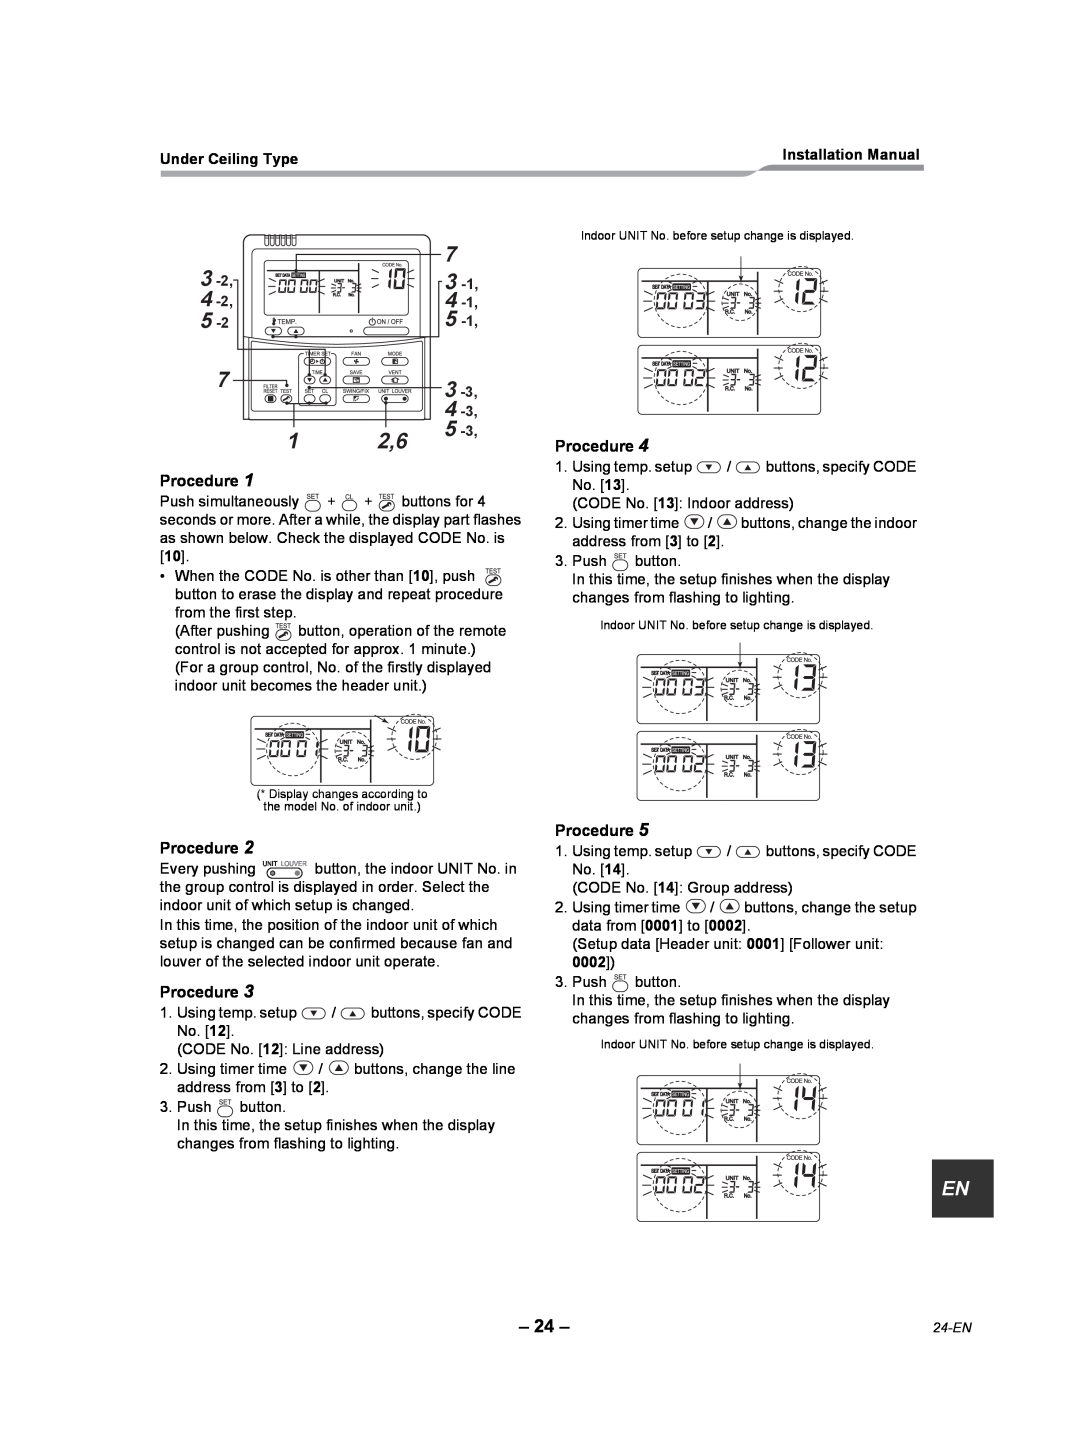 Toshiba RAV-SP420CT-UL, RAV-SP300CT-UL, RAV-SP180CT-UL, RAV-SP240CT-UL, RAV-SP360CT-UL Procedure, Under Ceiling Type 